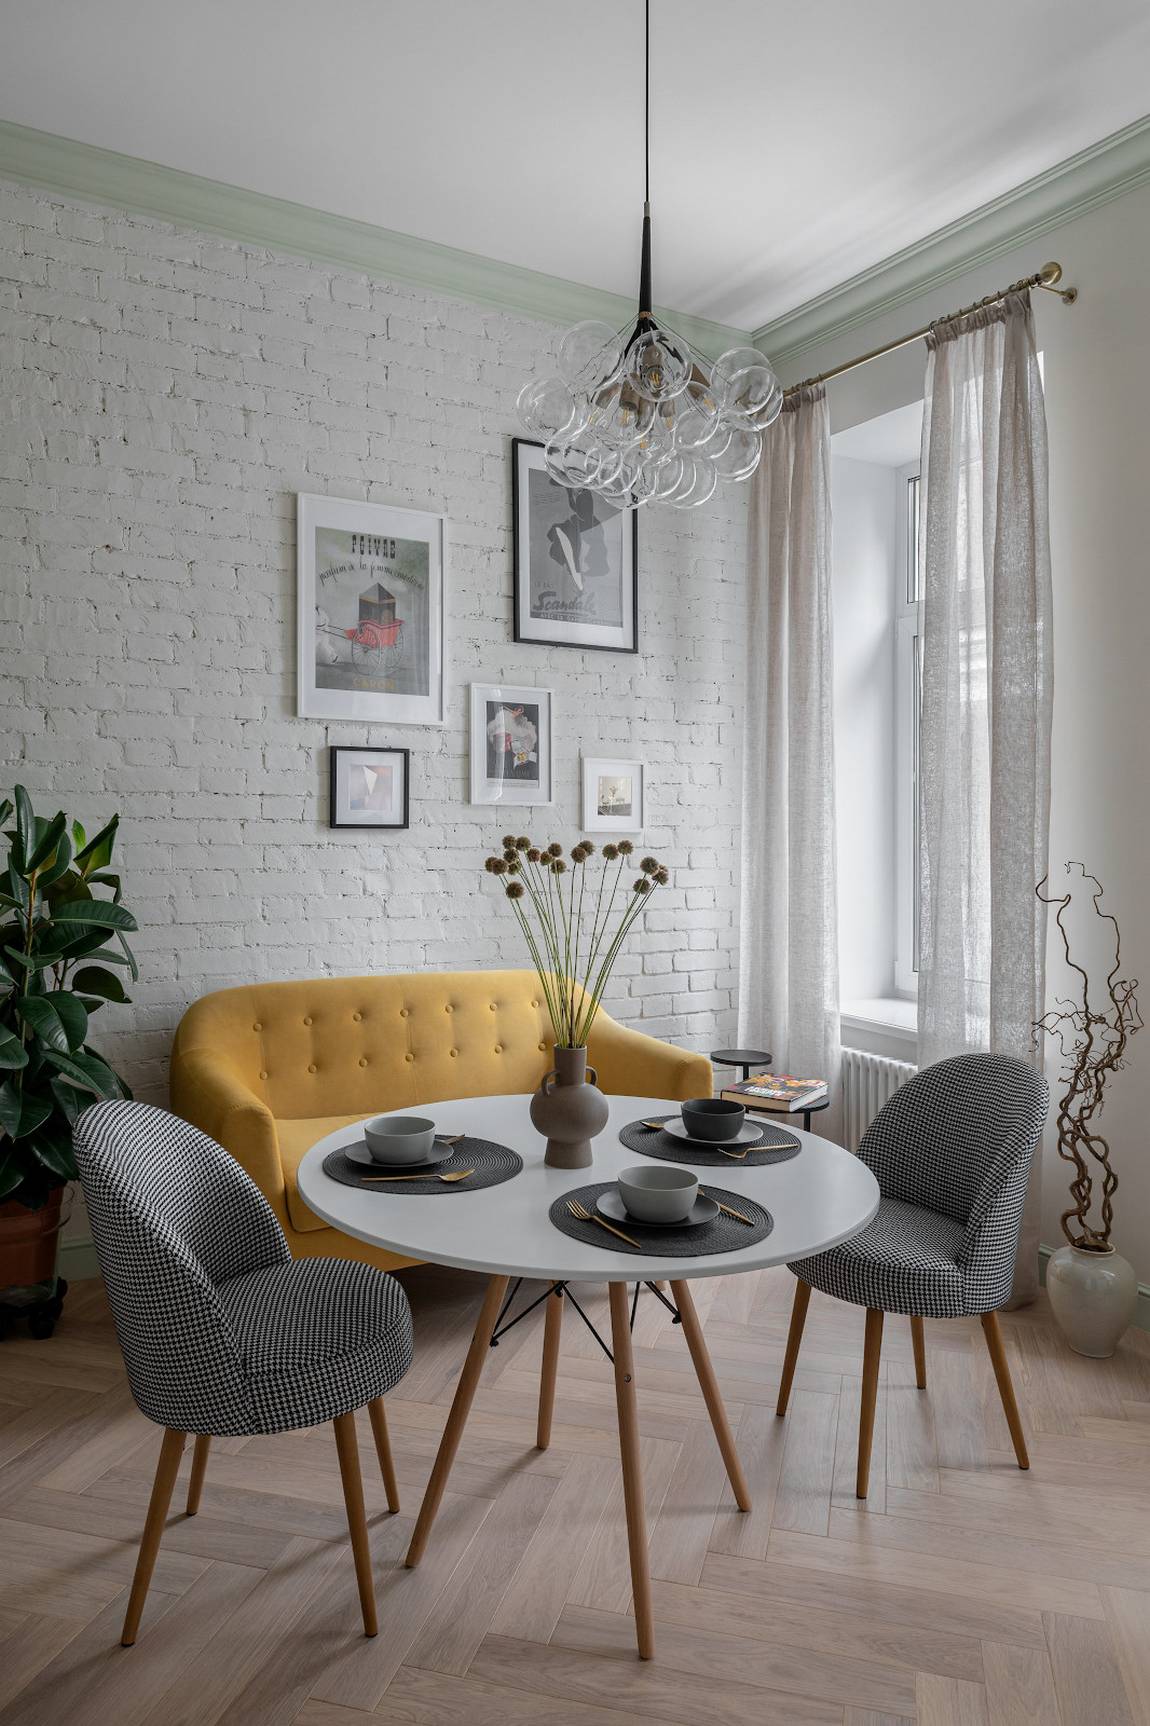 Khu vực phòng khách mang đậm dấu ấn phong cách Scandinavian với sàn gỗ họa tiết xương cá, ghế sofa màu vàng mù tạt nổi bật trước bức tường ốp gạch sơn trắng cùng những khung ảnh nhỏ xinh trang trí.